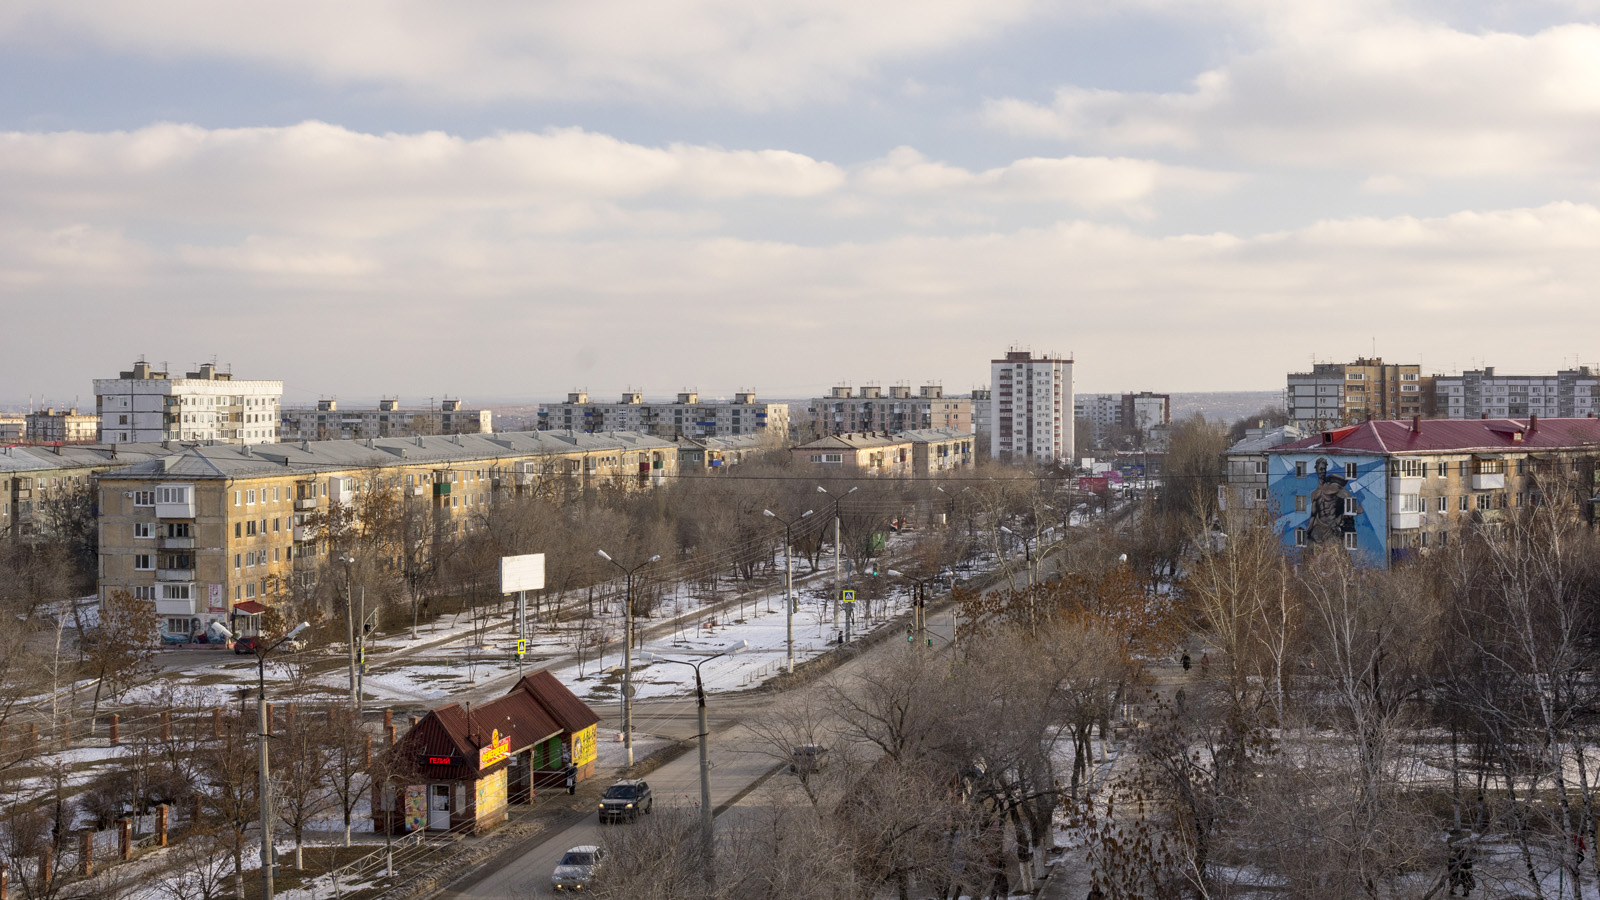 Novokuybyshevsk, Проспект Победы, 1. Novokuybyshevsk — Panoramas